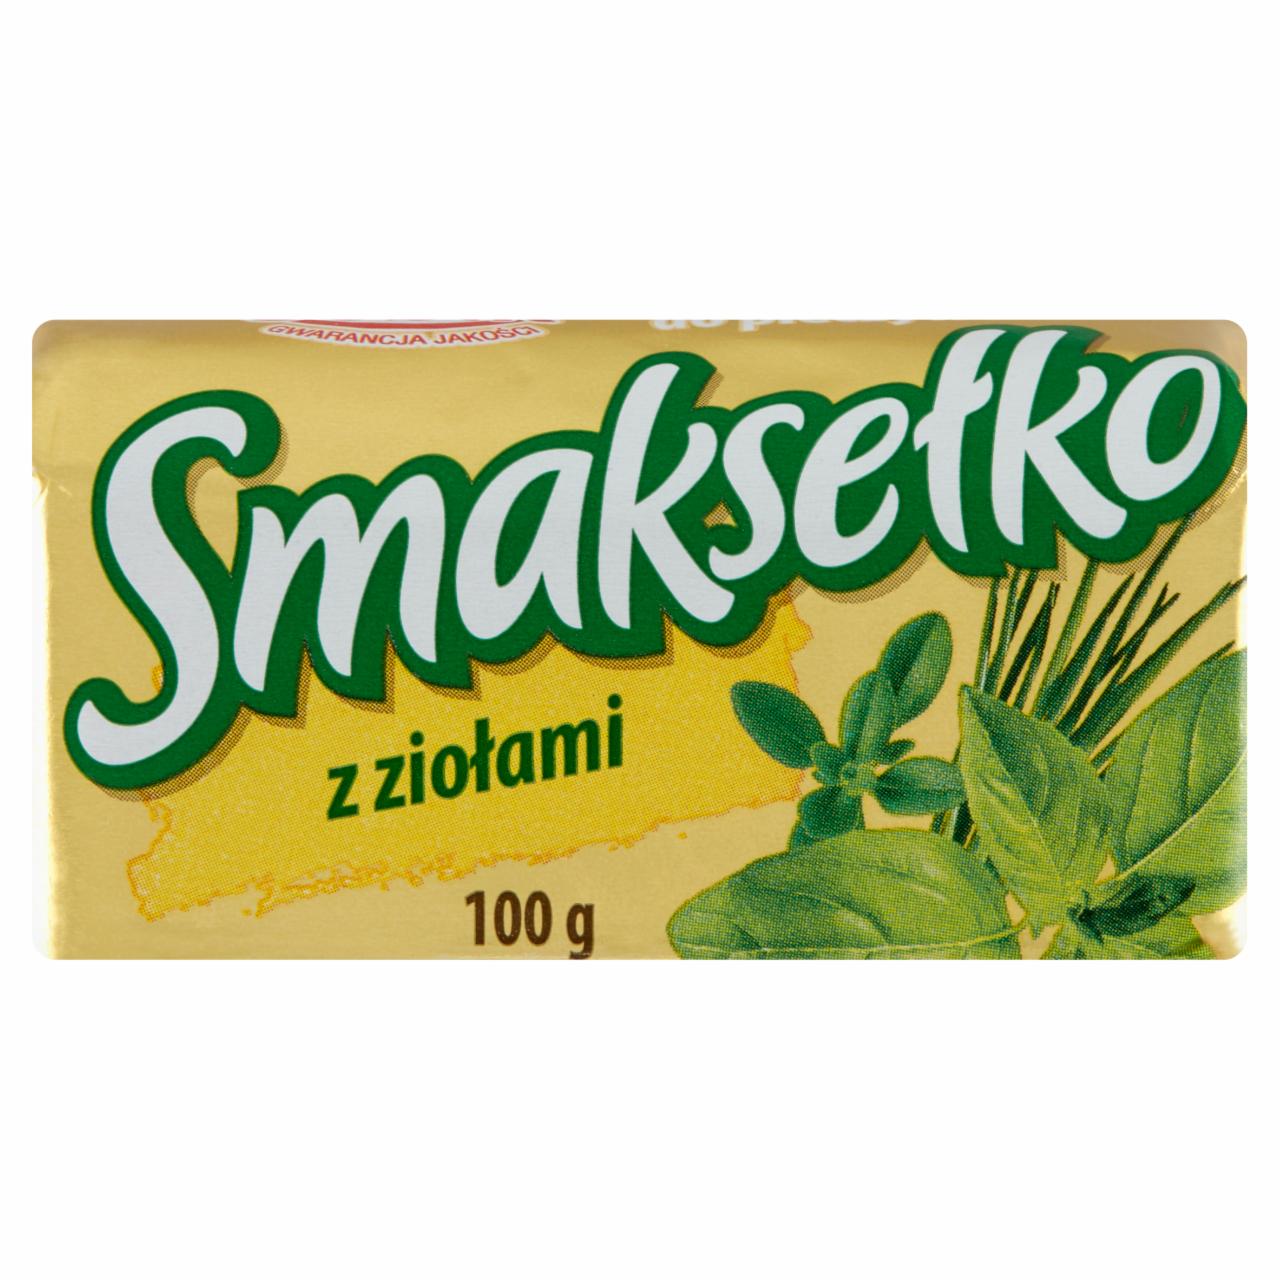 Zdjęcia - Sobik Smaksełko Mix tłuszczowy do smarowania z ziołami 100 g